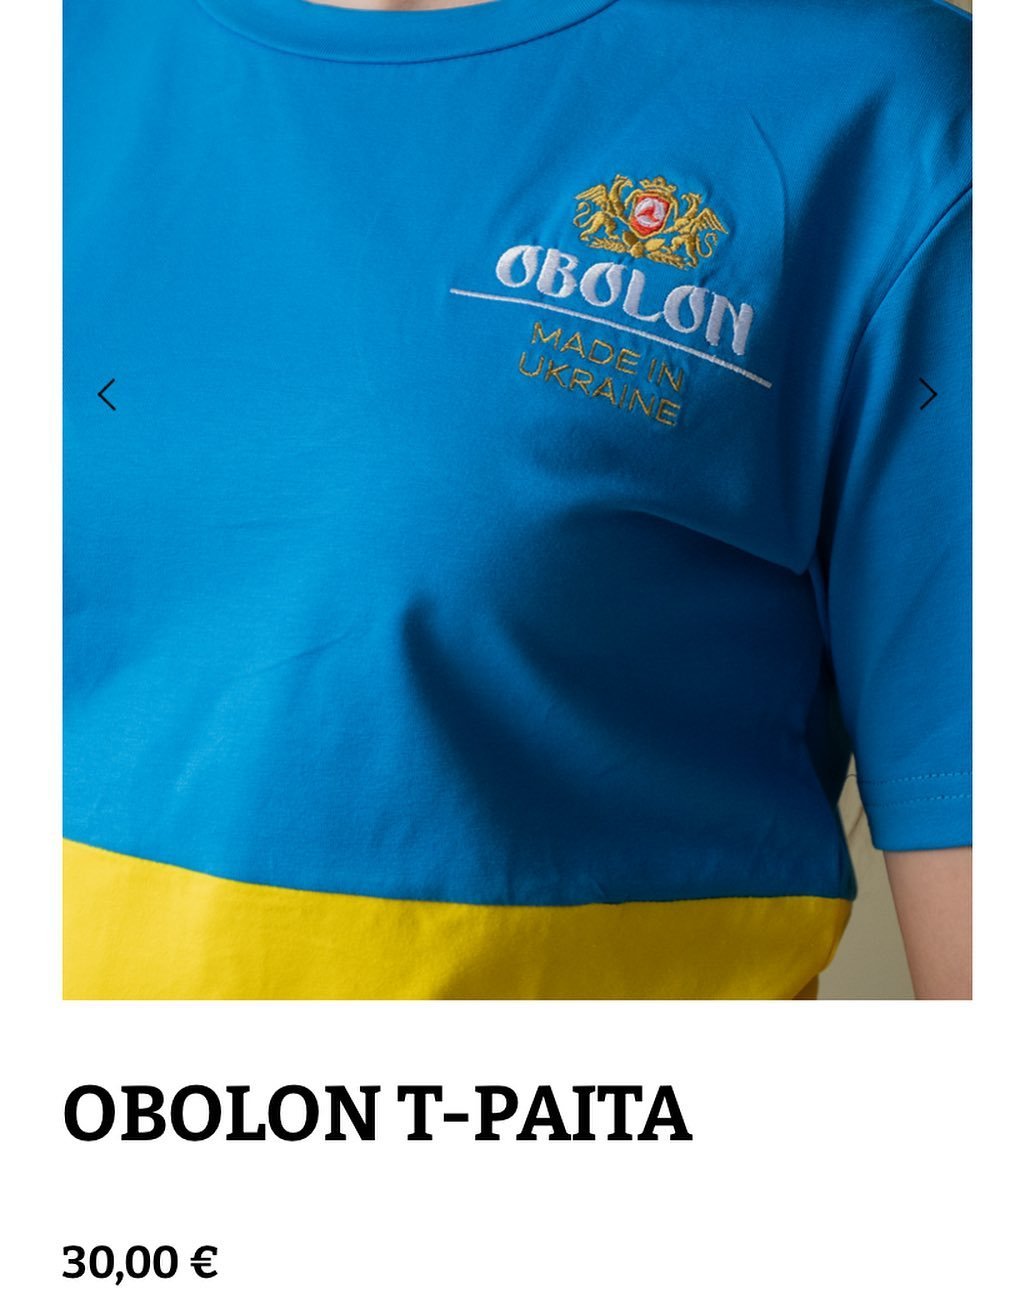 Nyt verkkokaupassamme myynniss&auml; Obolon-paitoja! Ukrainassa valmistettu Obolon t-paita on laadukasta ja venyv&auml;&auml; puuvillaa. Paita l&ouml;ytyy t&auml;ll&auml; hetkell&auml; verkkokaupastamme Obolon.fi kolmessa koossa: S, M ja L.

#obolon 